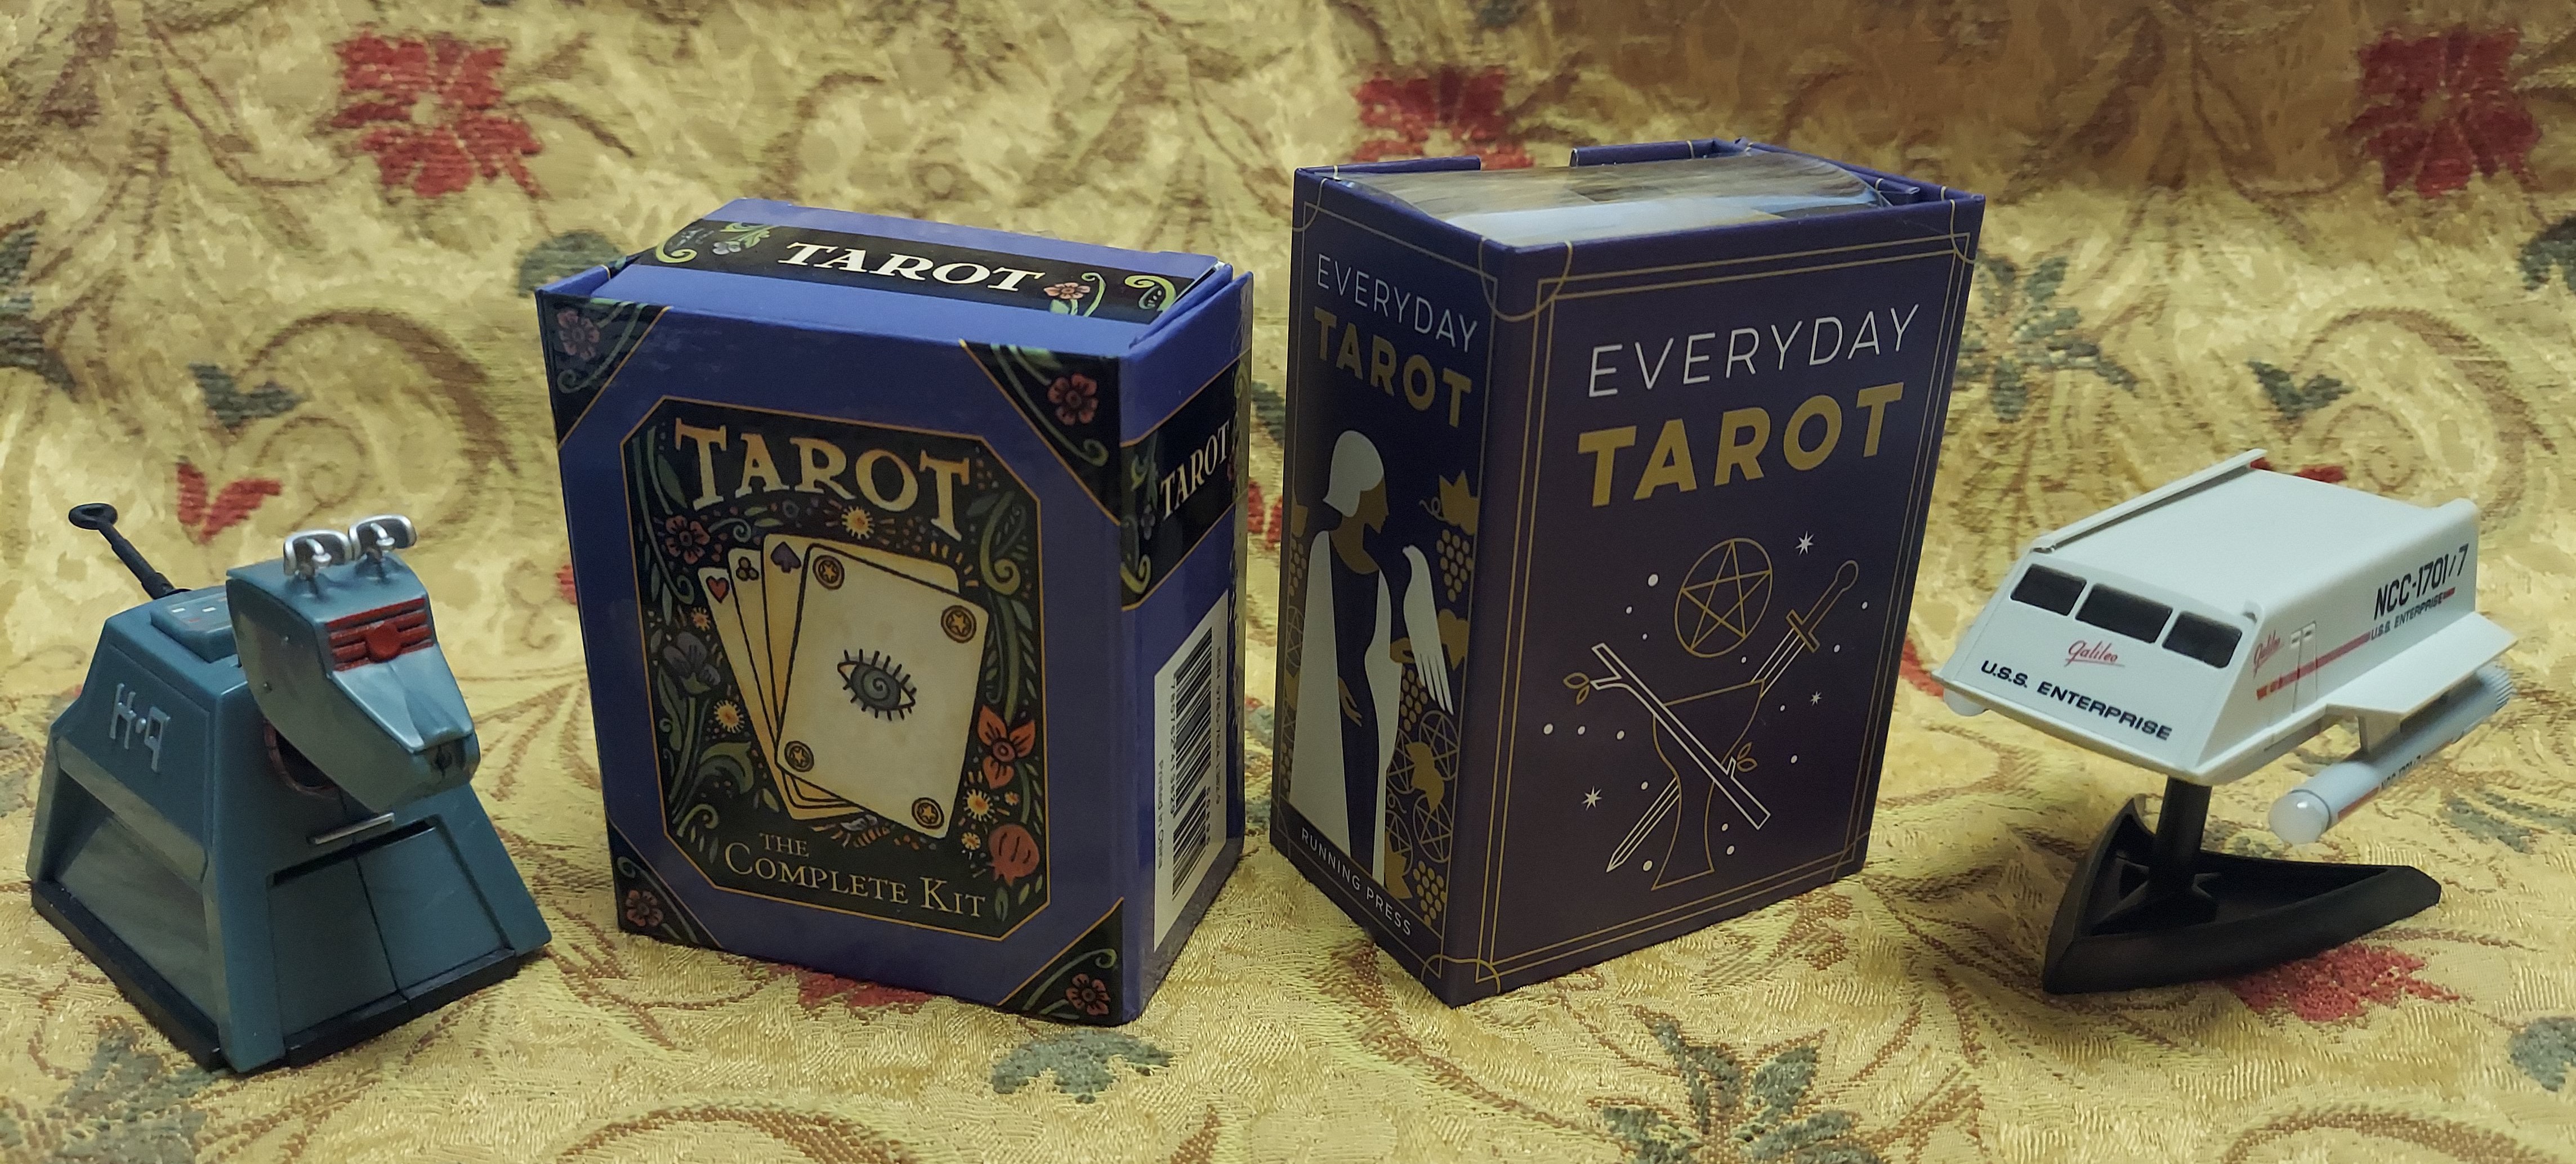 Review: RP Minis: Tarot Nova and Everyday Tarot